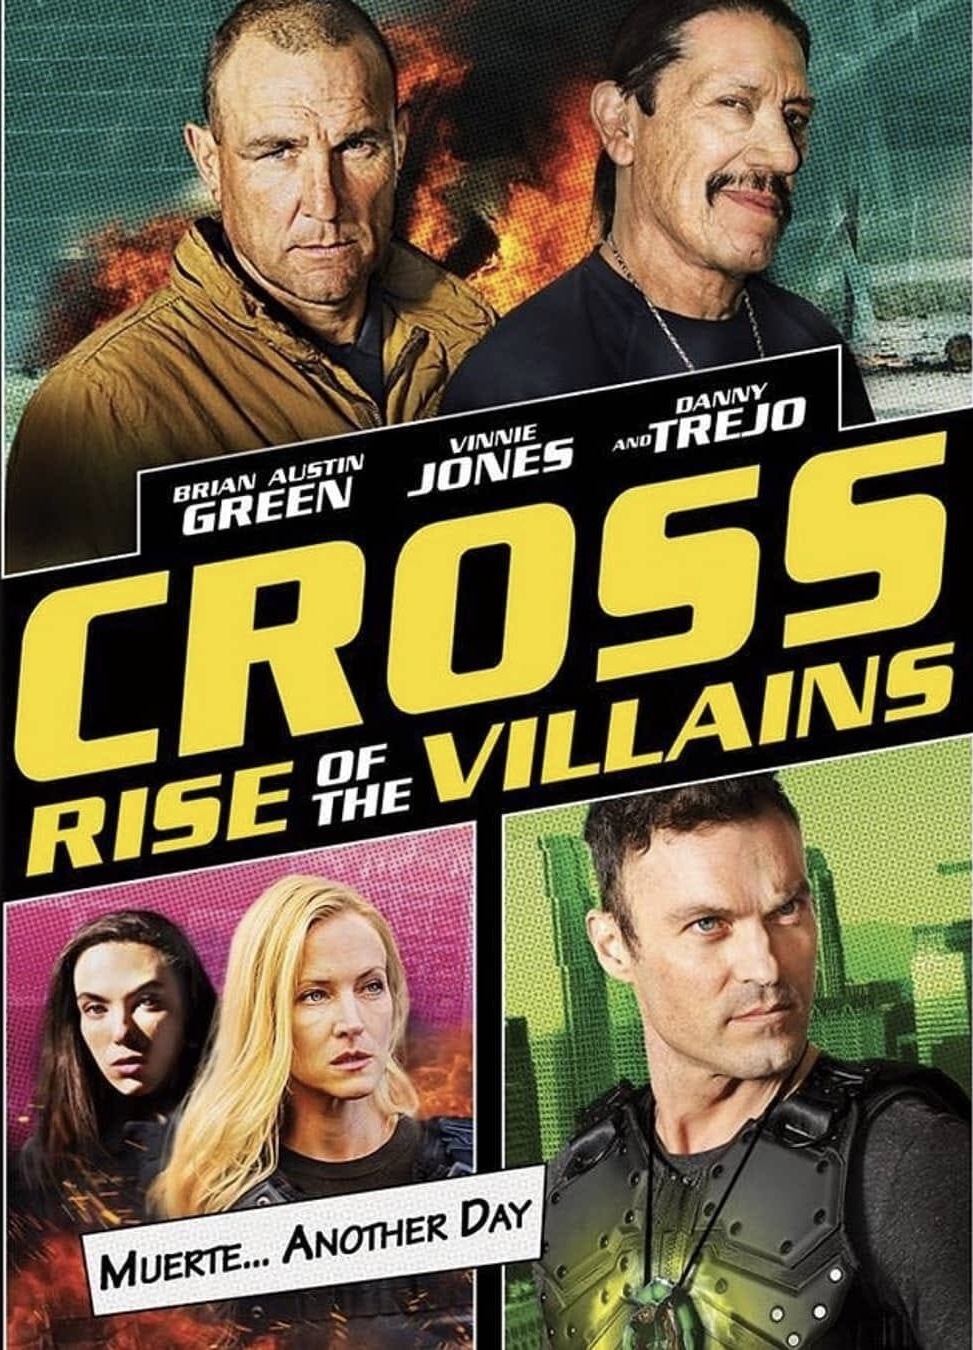 ดูหนังออนไลน์ฟรี Cross Rise Of The Villains (2019)